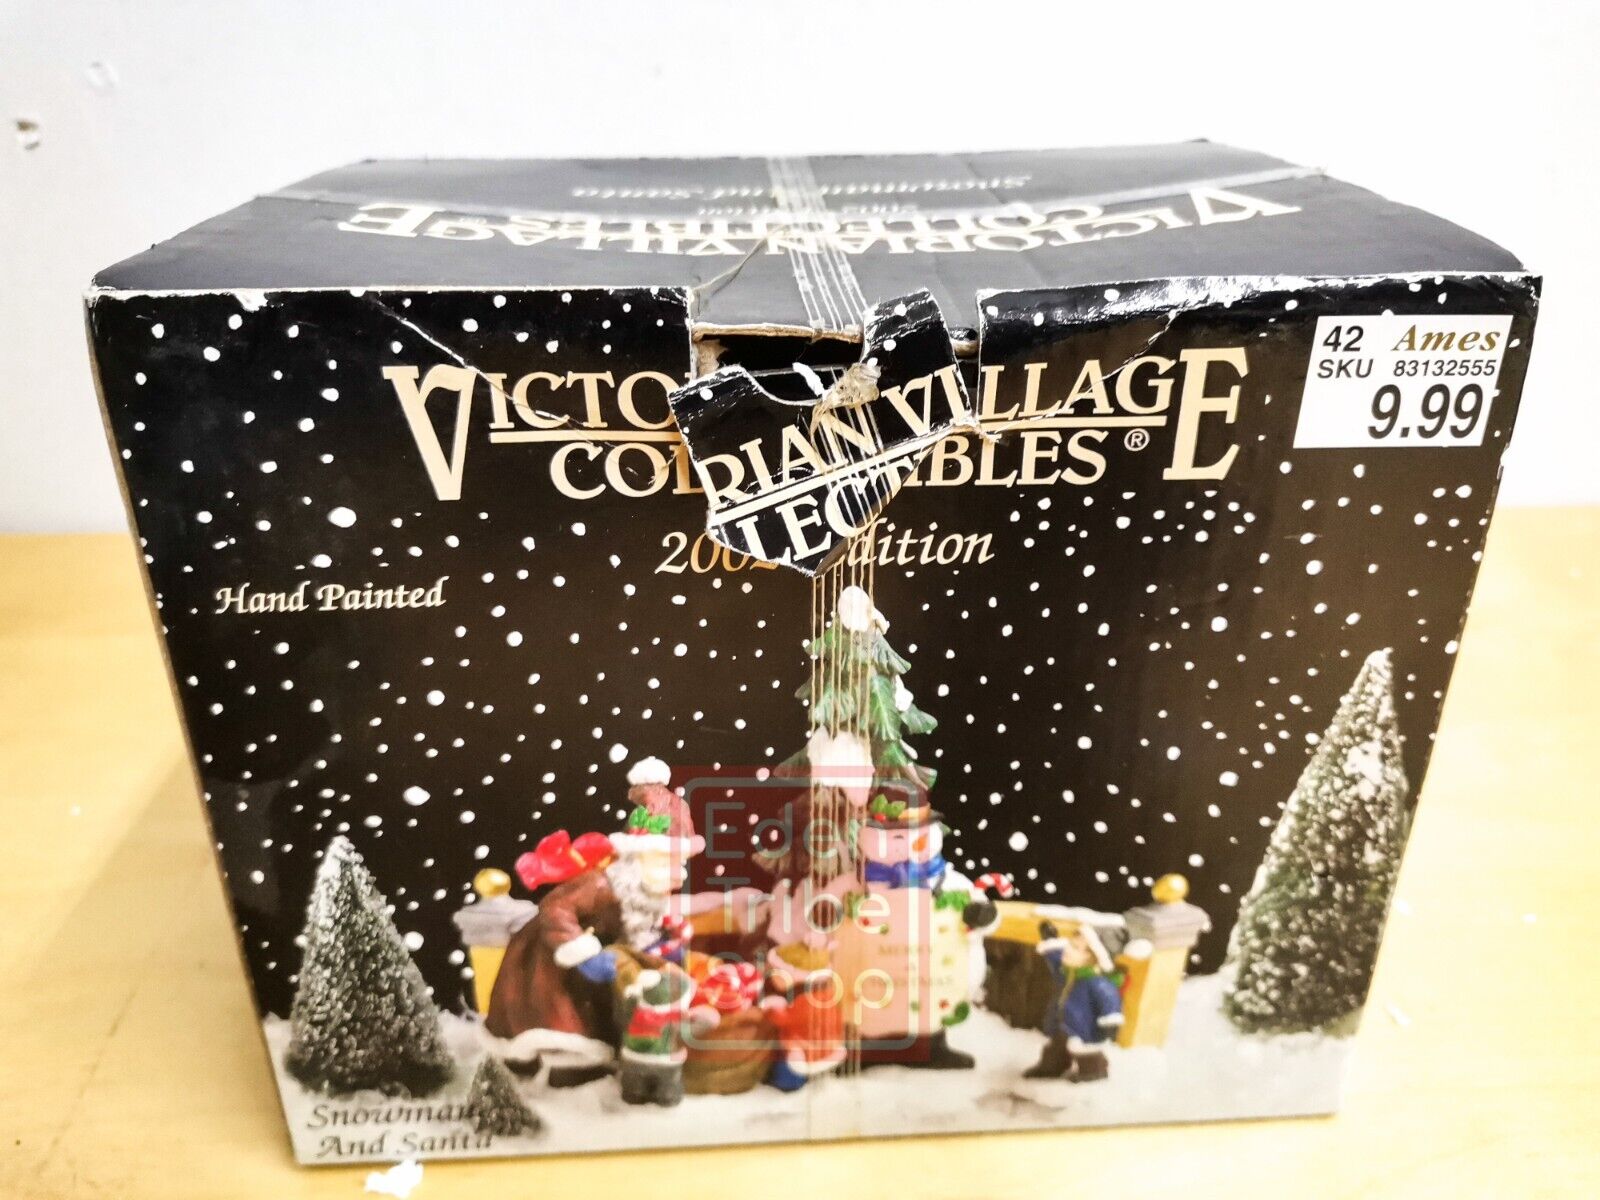 VTG Victorian Village Collectibles 2002 Hand Painted Porcelain Santa Snowman